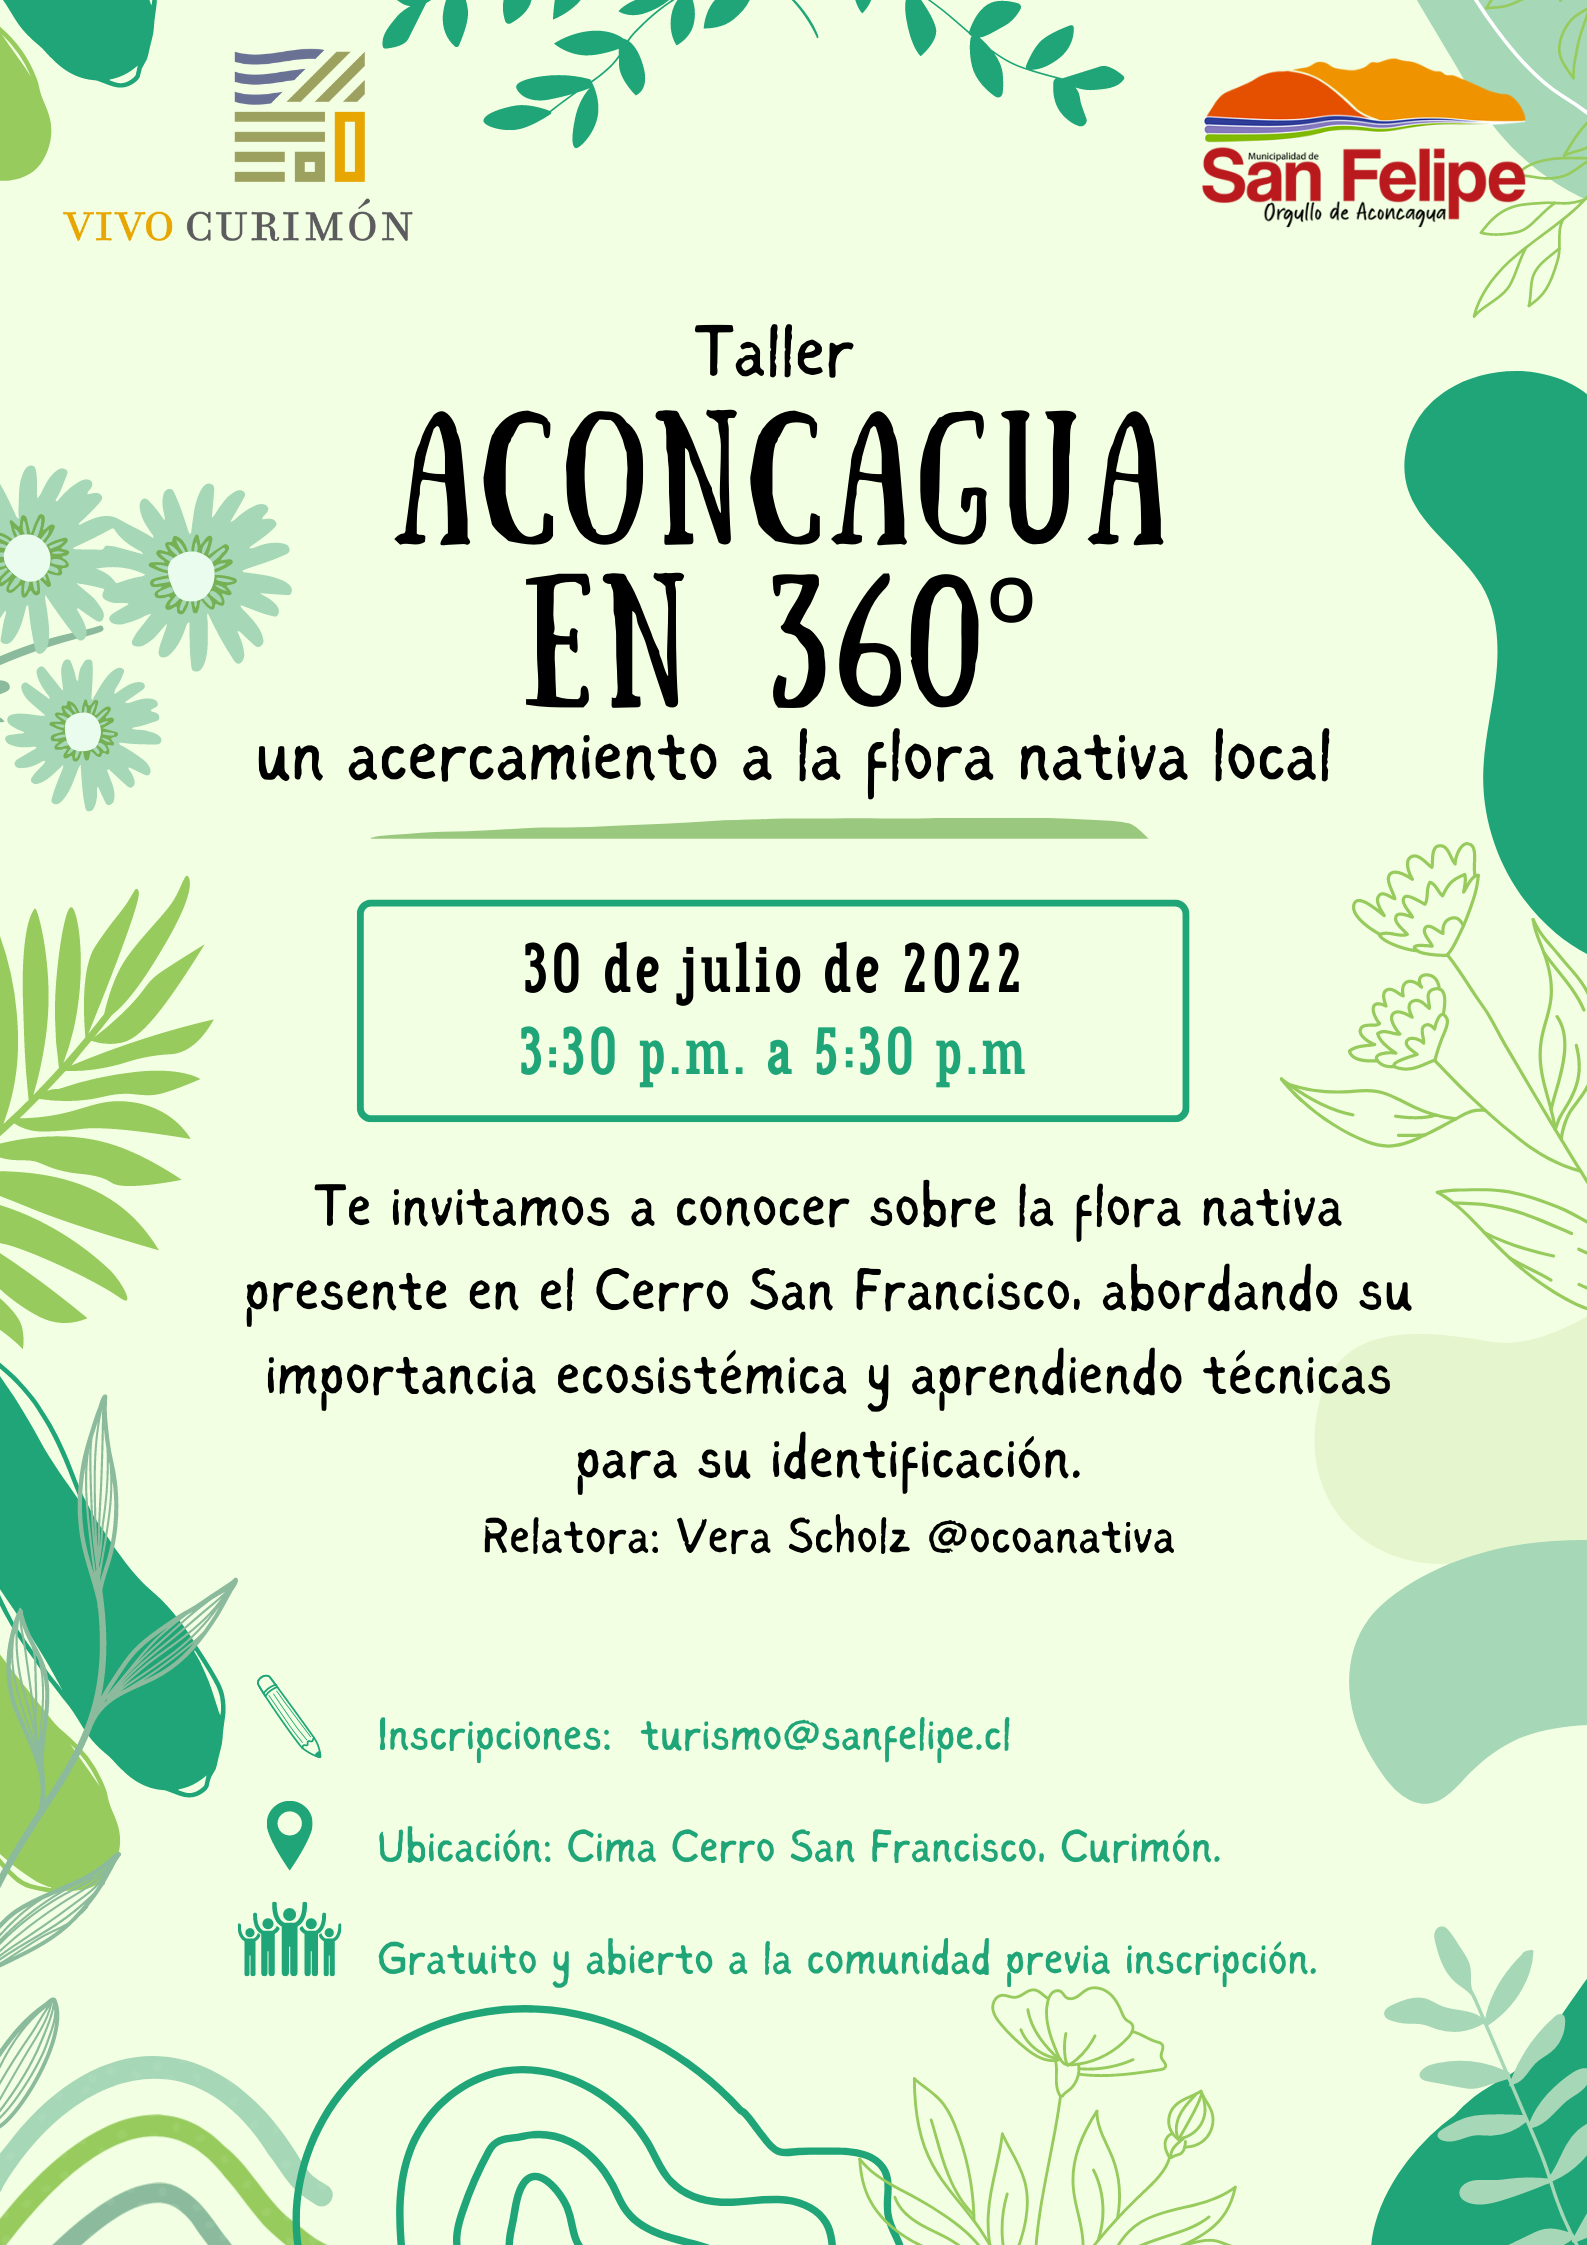 CURIMÓN: Cerro San Francisco de Curimón abre sus puertas para mostrar y enseñar sobre la flora nativa